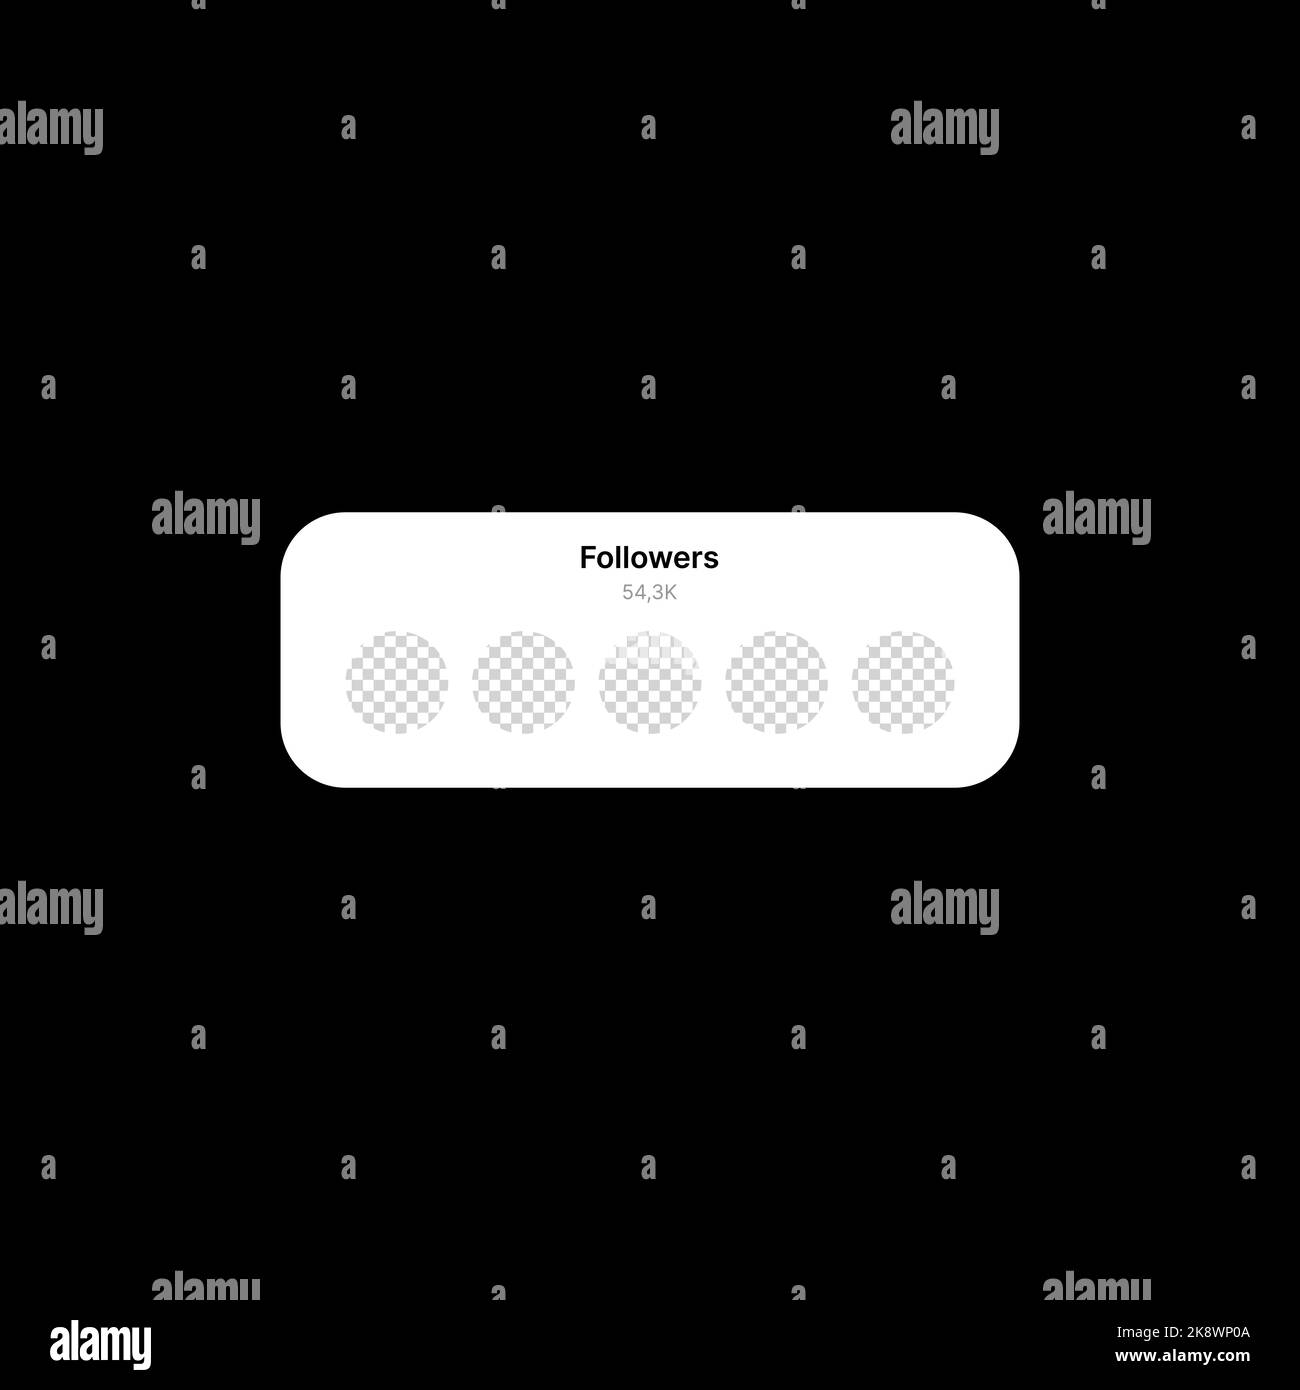 Banner-Illustration Für Follower. Social Media UI-Konzept auf schwarzem Hintergrund. Fünf leere Kreise zum Hinzufügen von BenutzerAvataren mit bearbeitbarer Anzahl von Abonnenten. Web-Element für mobile Anwendungen. Vektorgrafik Stock Vektor